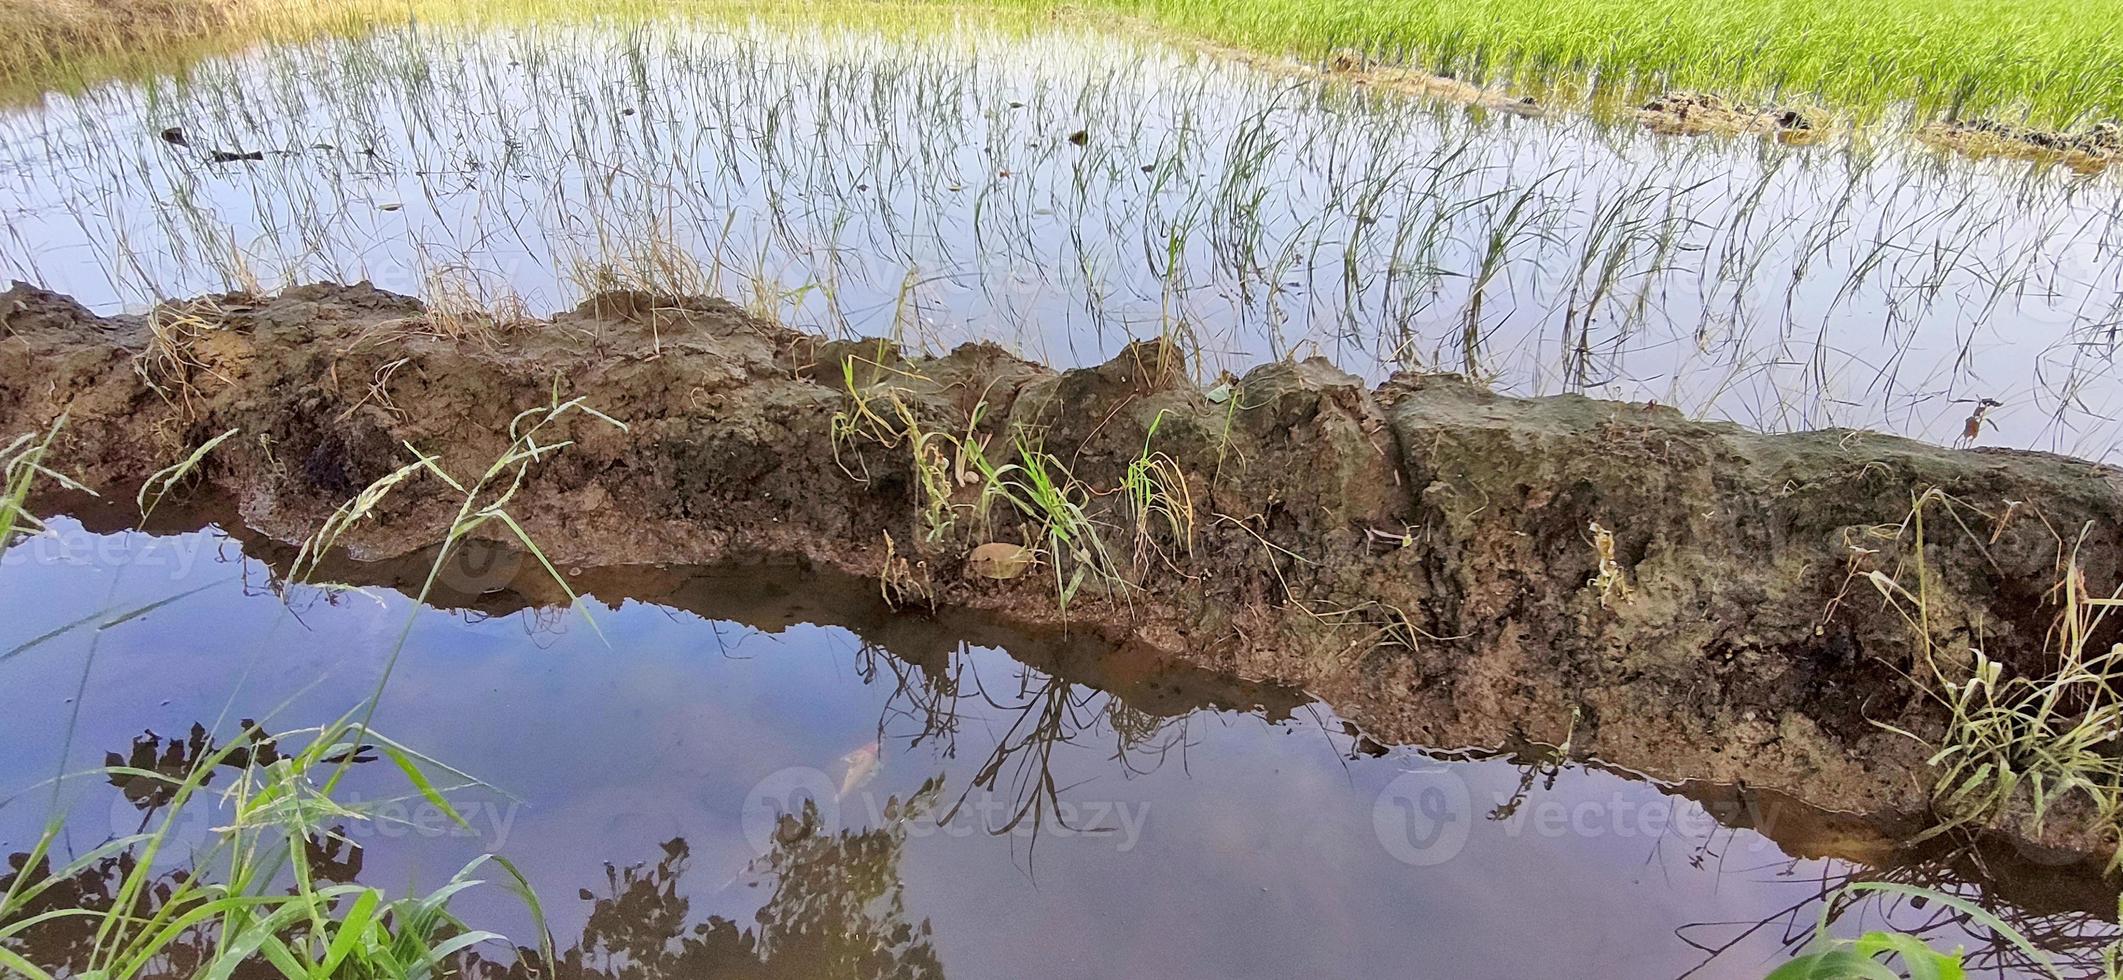 cultivo de arroz en campos indios. foto